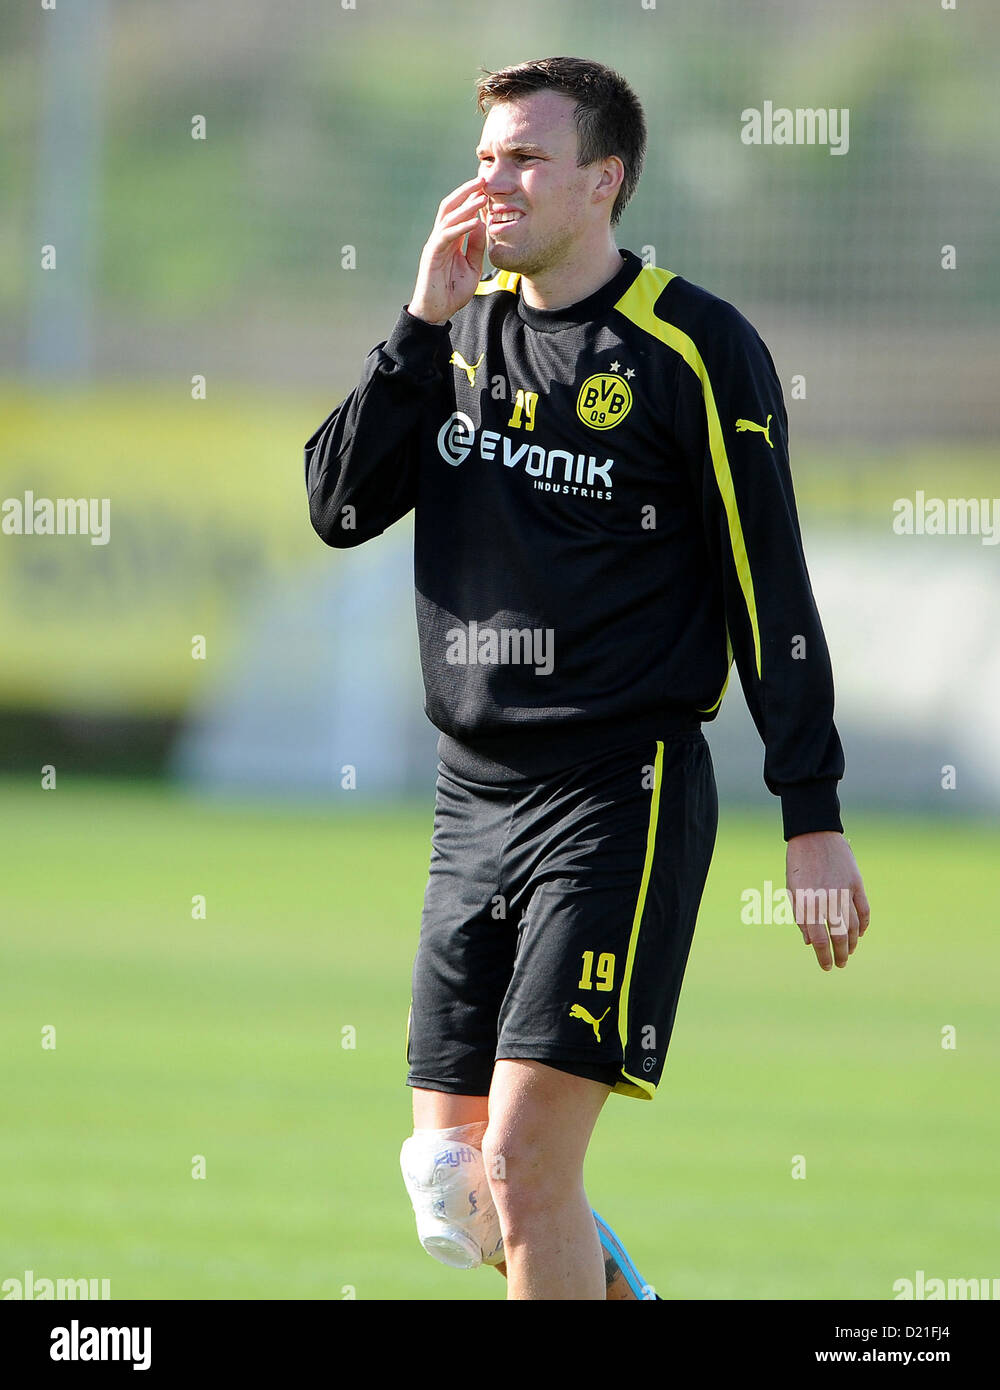 Giocatore della Bundesliga club di calcio Borussia Dortmund, Kevin Grosskreutz, prende parte alla formazione al camp in La Manga, Spagna, 10 gennaio 2013. Foto: GUIDO KIRCHNER Foto Stock